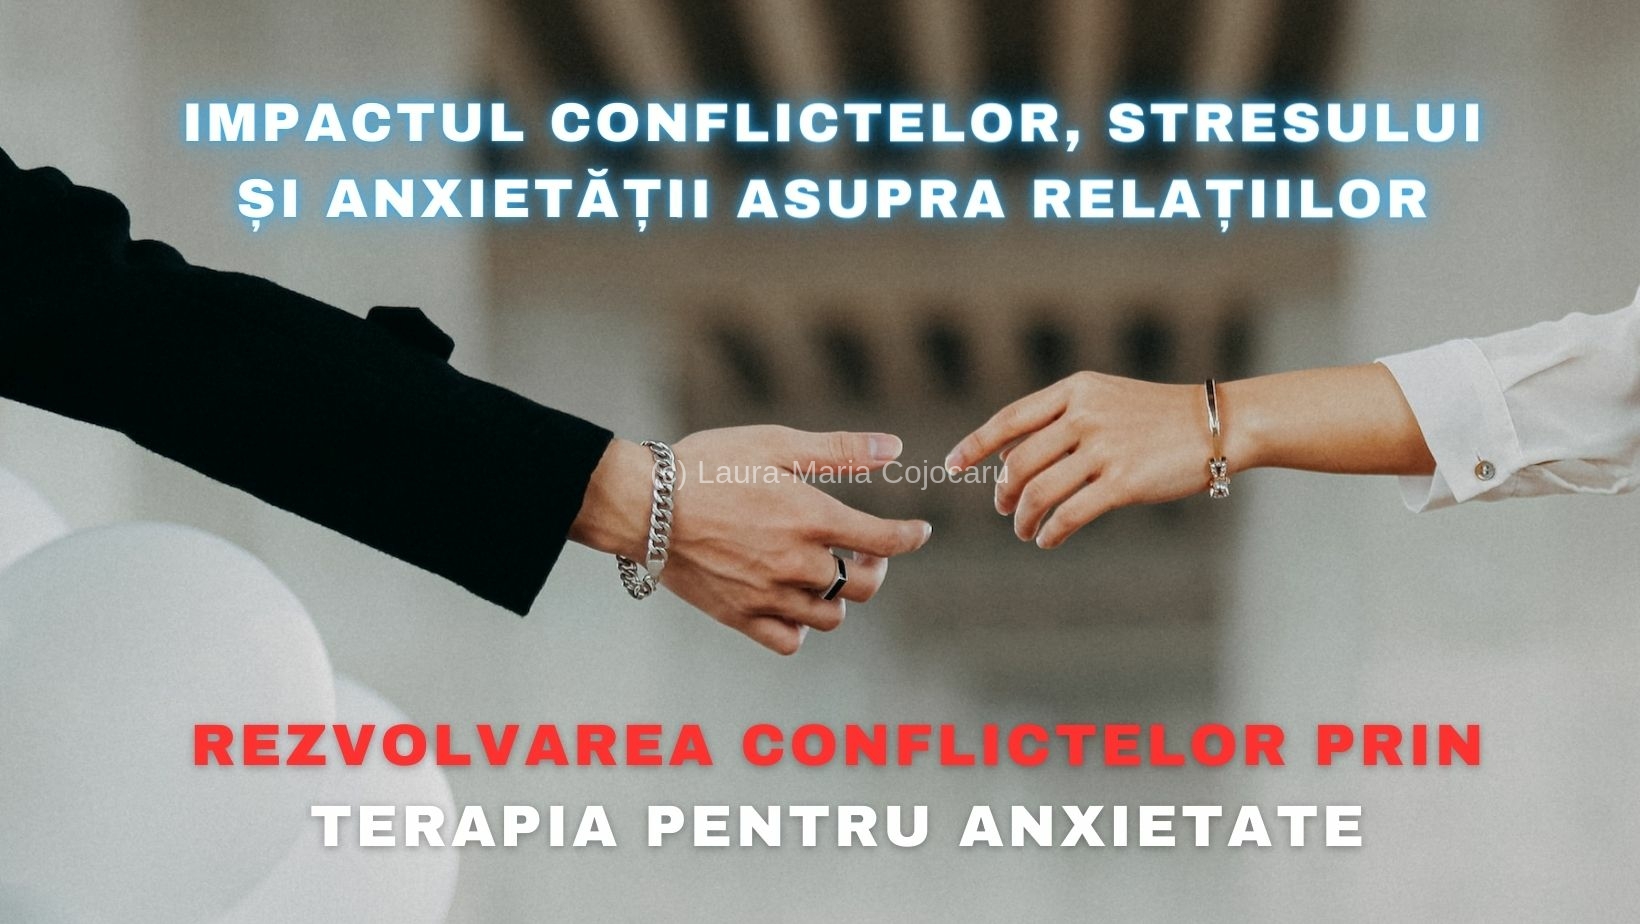 Impactul conflictelor, stresului și anxietății asupra relațiilor